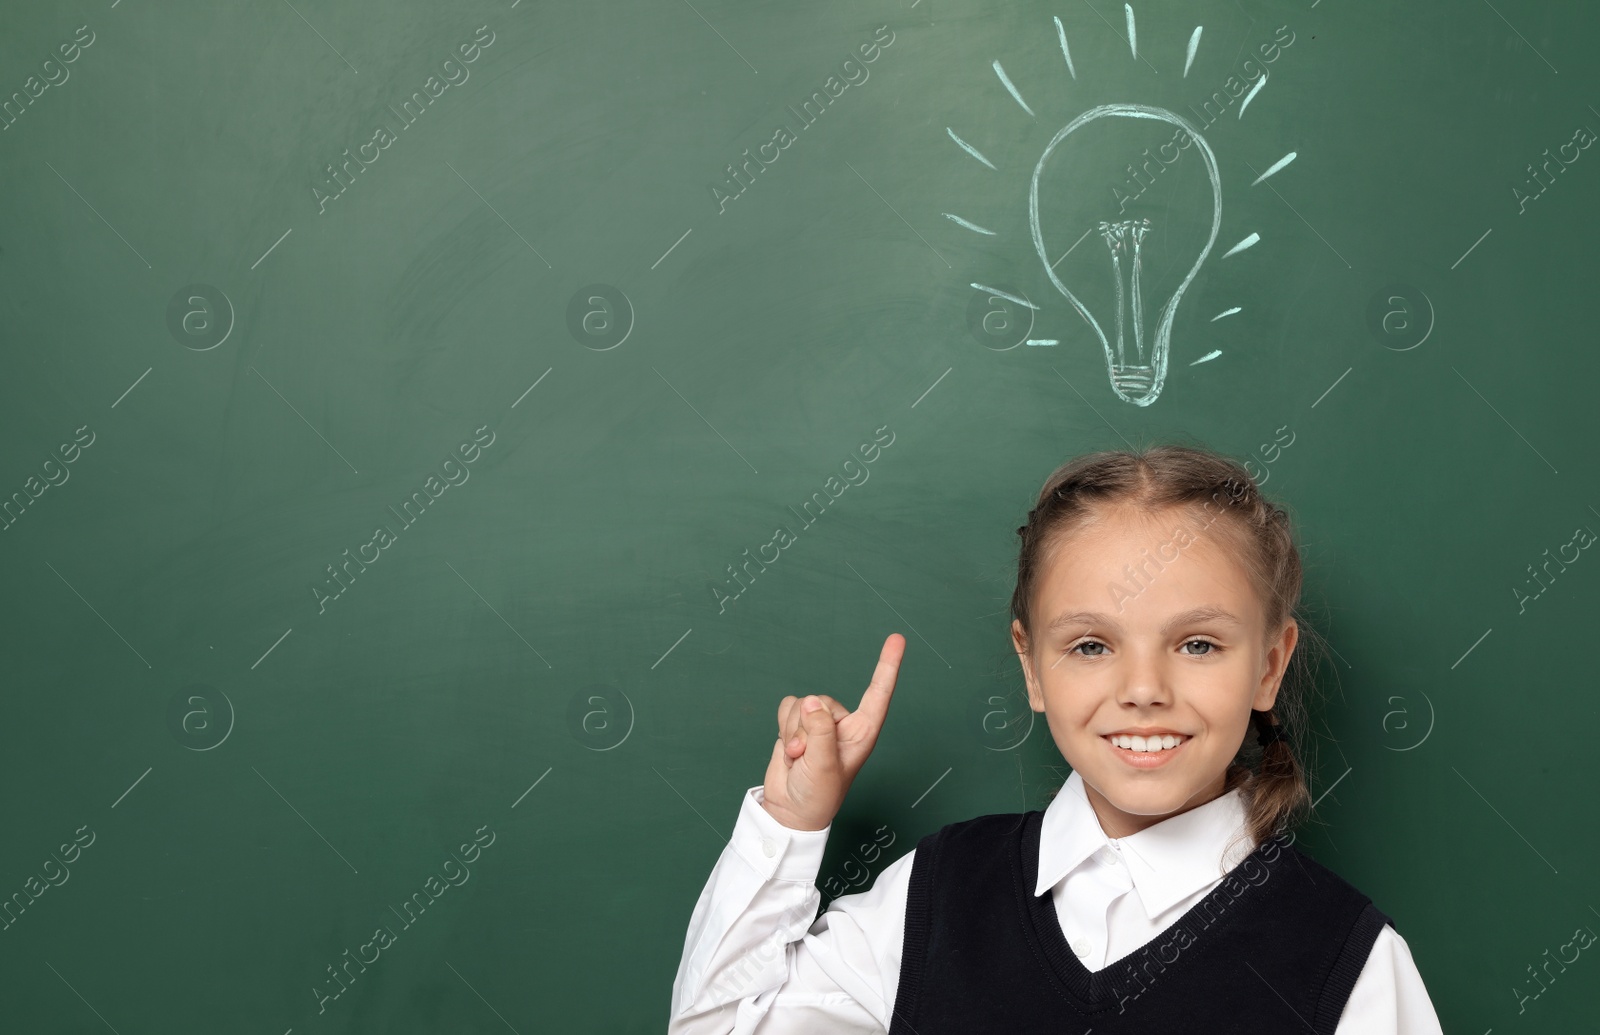 Photo of Little school child in uniform near chalkboard with lightbulb drawing